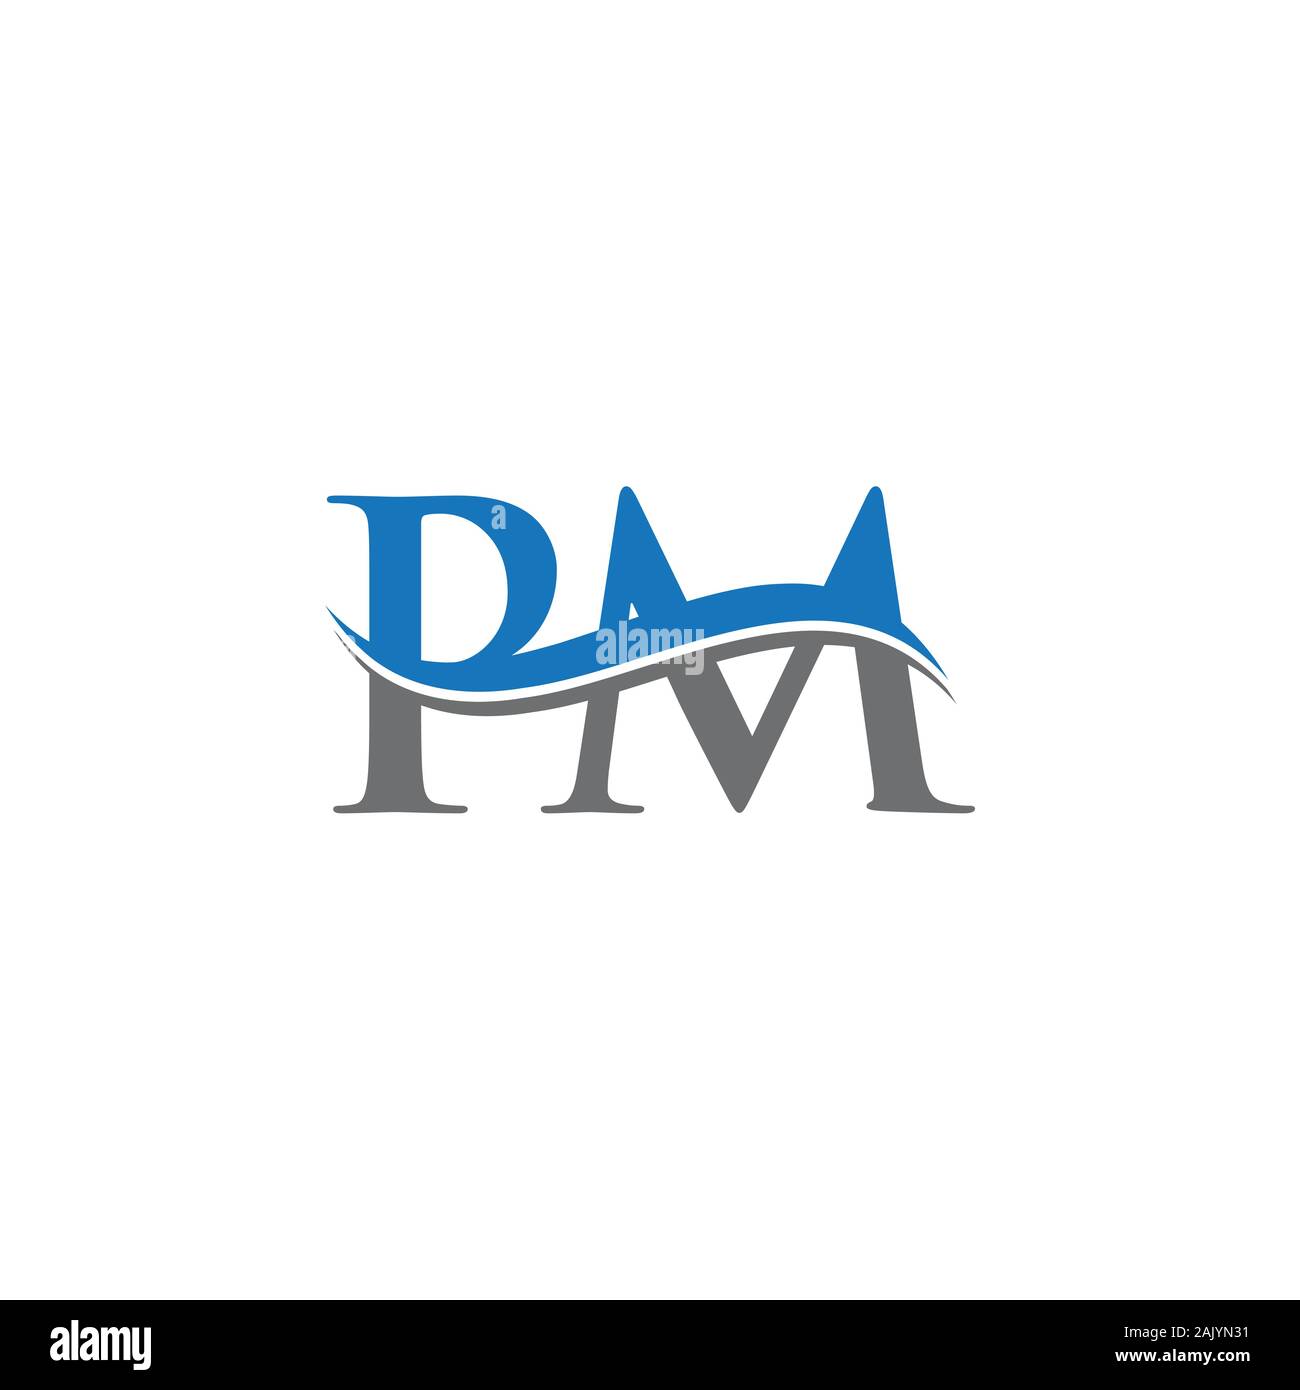 Premium Vector  Initial letter pm logo design vector